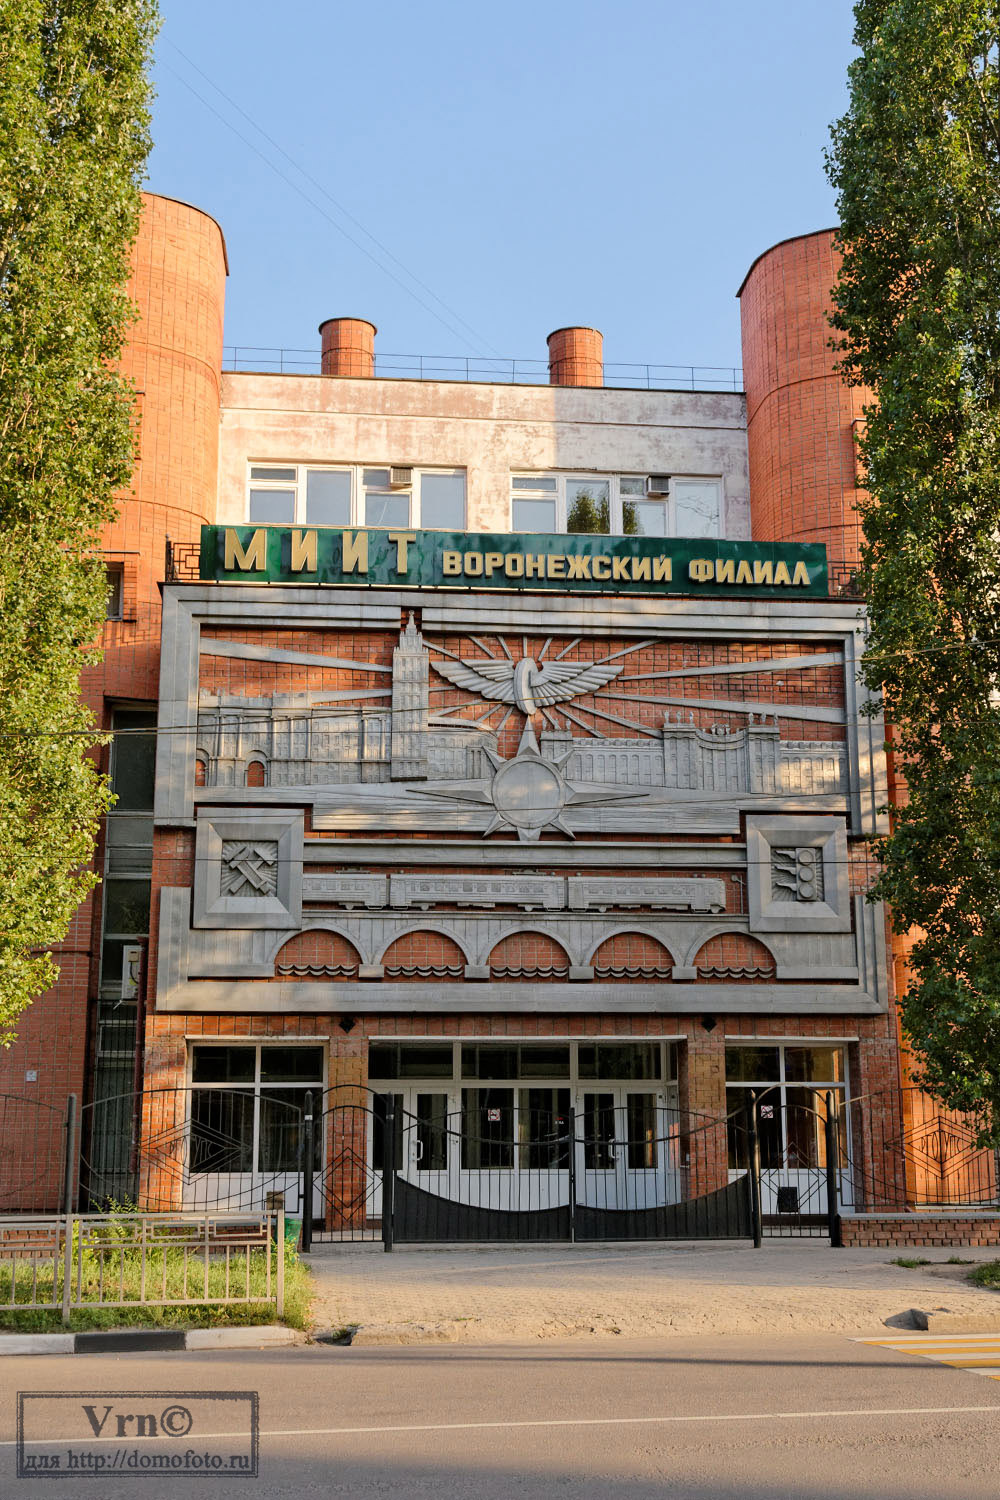 Woroneż, Улица Урицкого, 75А. Монументальное искусство (мозаики, росписи)